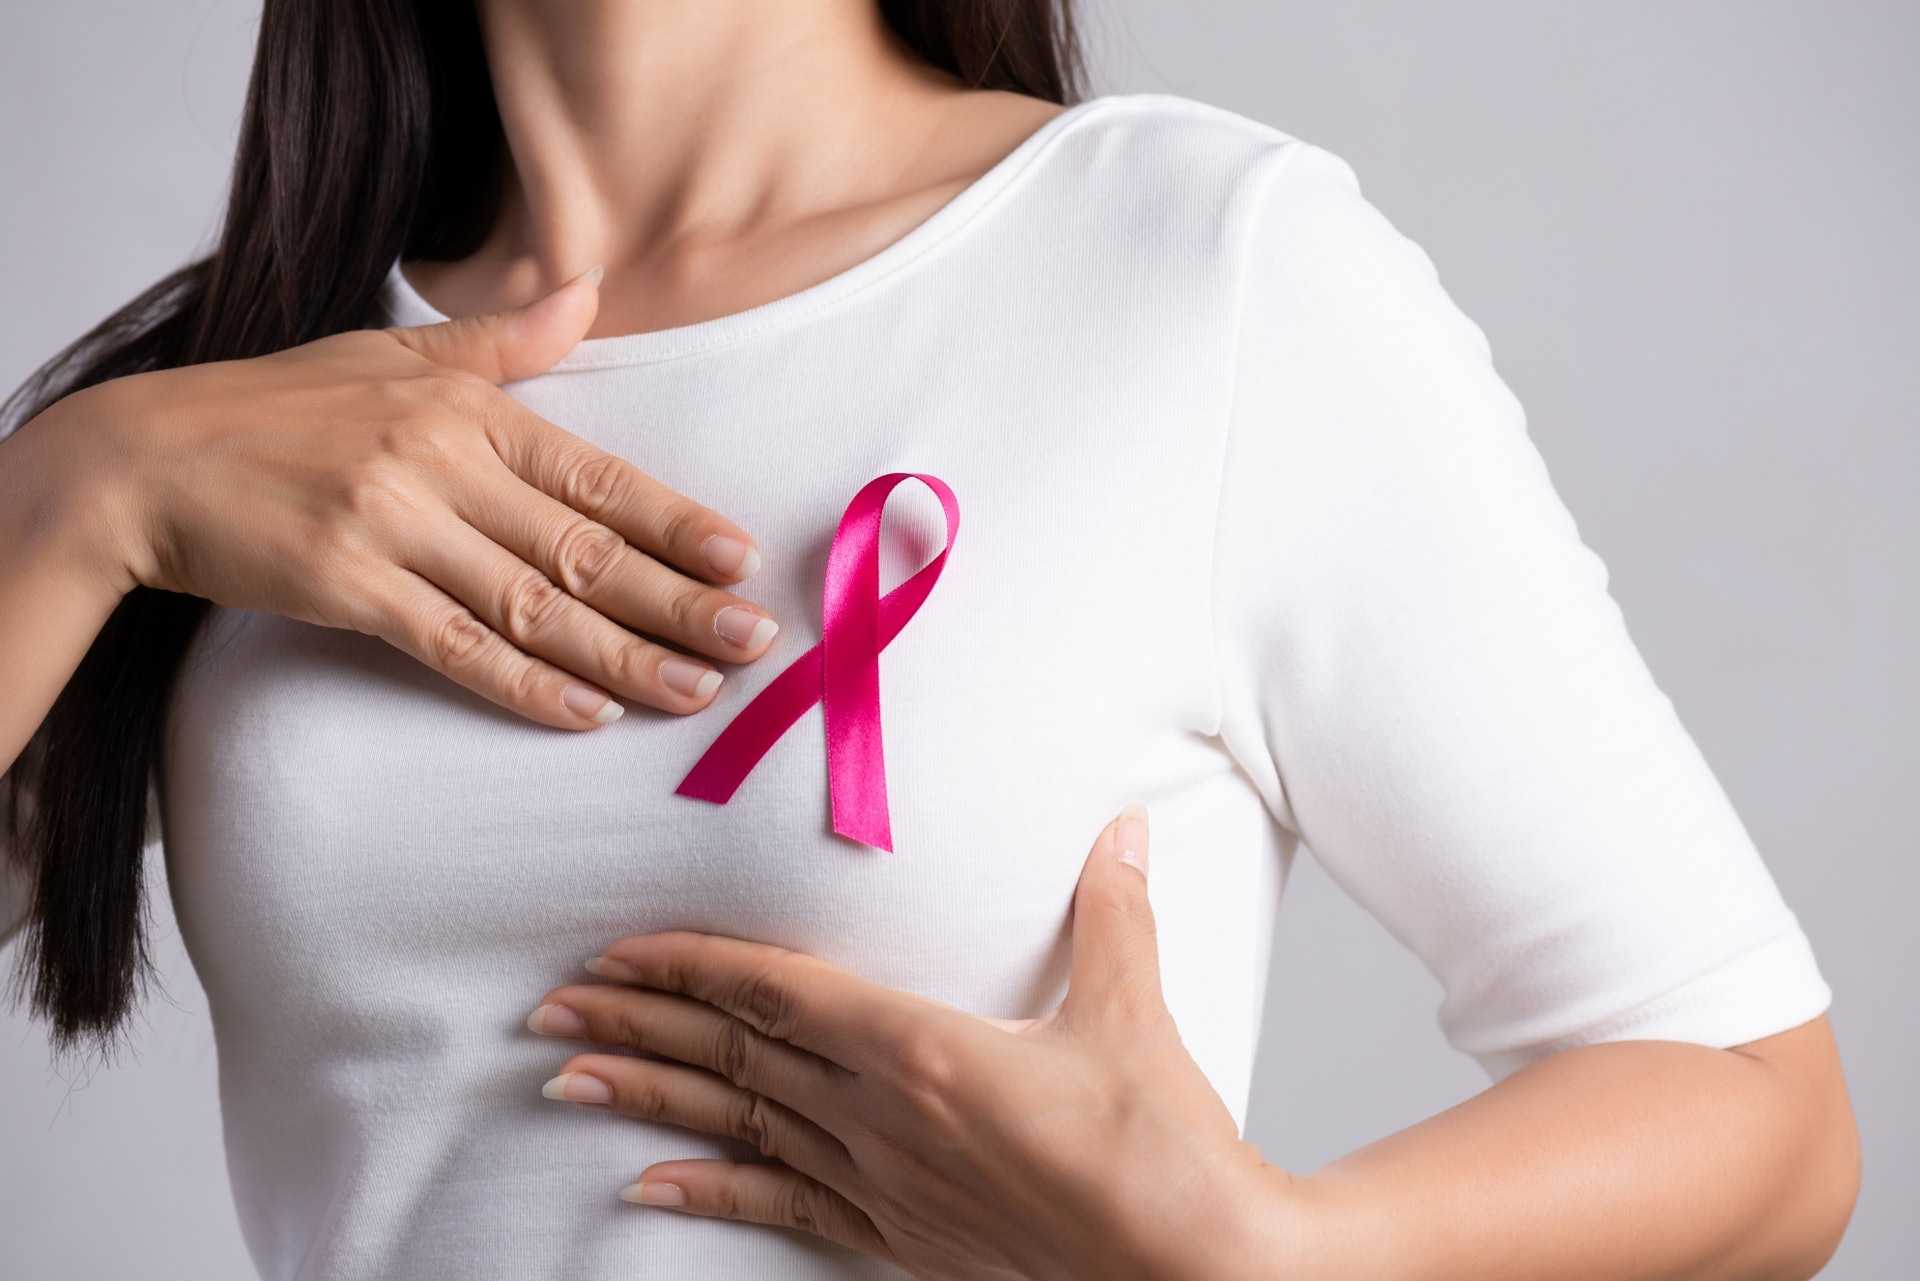 乳癌為本港女性最常見的癌症。(Shutterstock)